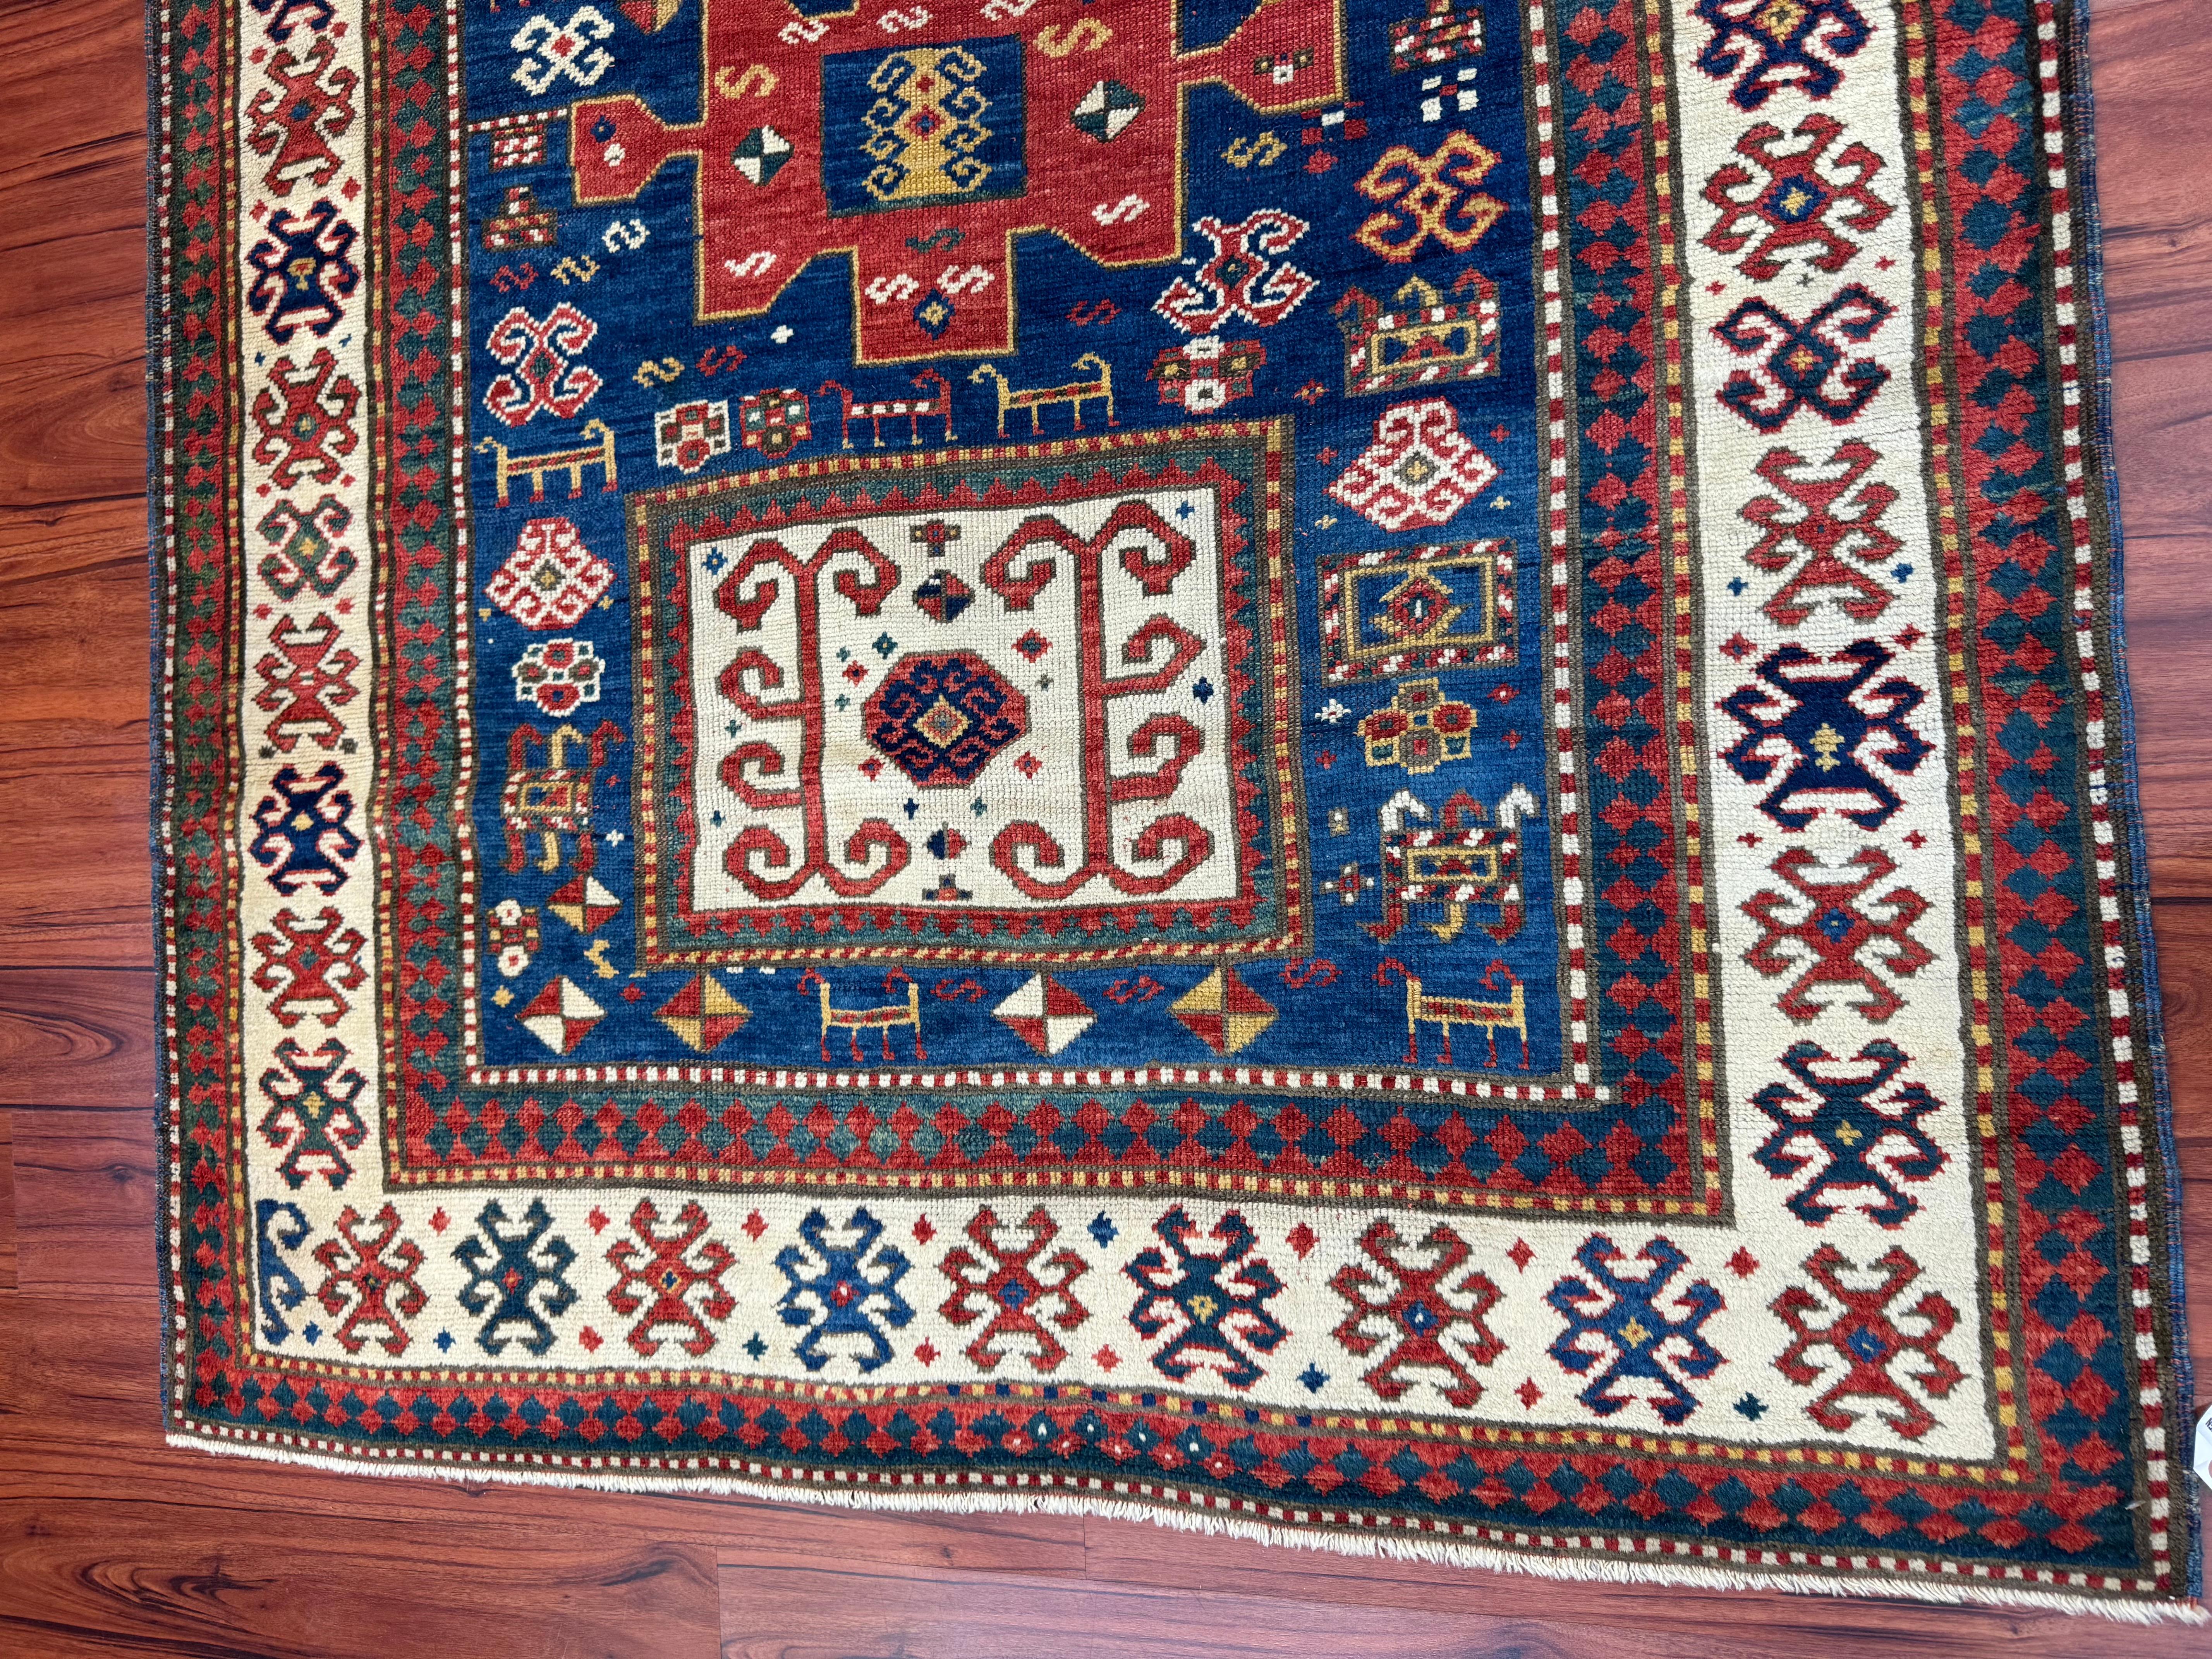 Ein atemberaubender Karatschow-Kazak-Teppich, der aus dem Russland des 19. Jahrhunderts stammt. Dieser Teppich hat eine reiche Geschichte und ist in ausgezeichnetem Zustand! Die Maße sind 4'9